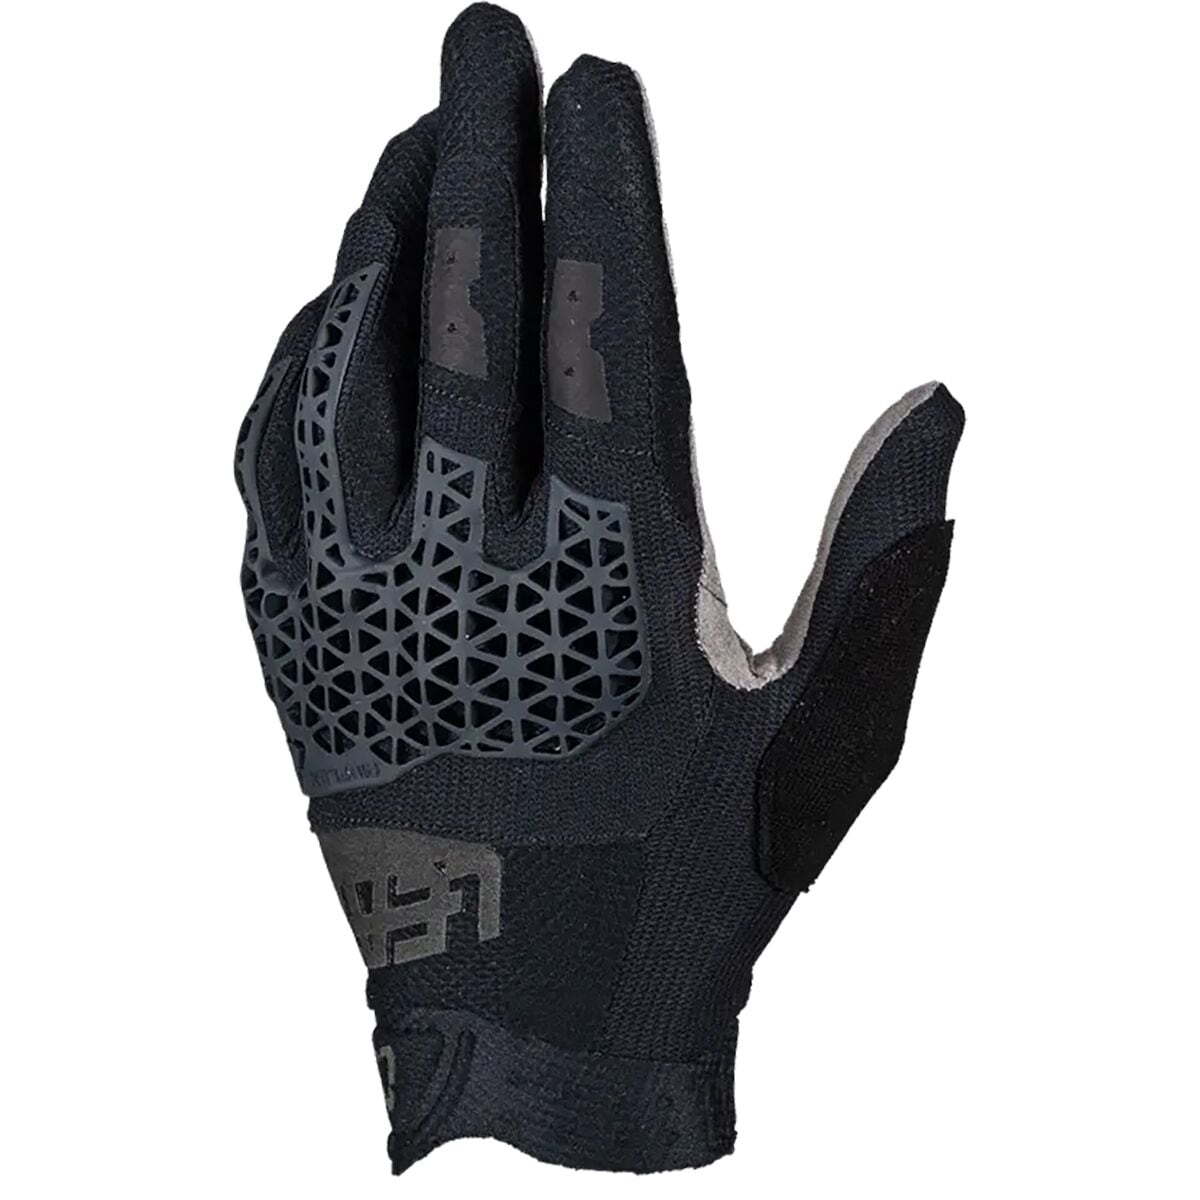 MTB 4.0 Lite Glove - Men's